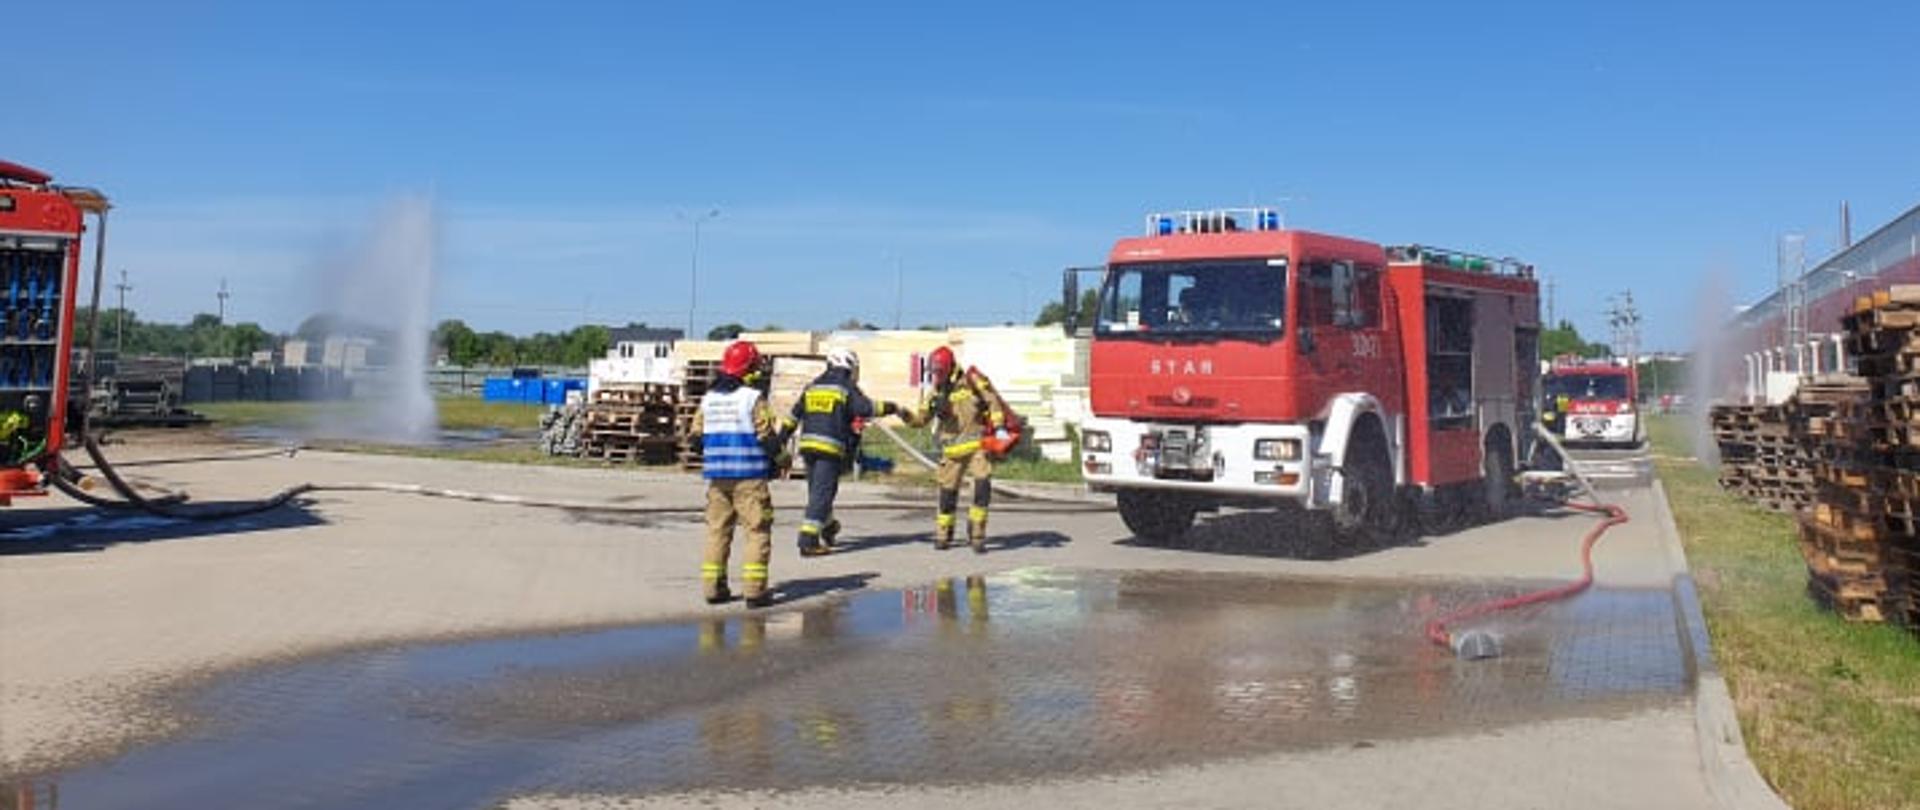 Strażacy z JRG Oborniki oraz OSP KIszewo i Rożnowo podczas działań ratowniczo gaśniczych na terenie DT Swiss podczas działań ratowniczo gaśniczych. Na pierwszym planie KDR - kierujący działaniem ratowniczym oraz strazak z OSP i PSP. W tle samochod pożarniczy z JRG Oborniki. 